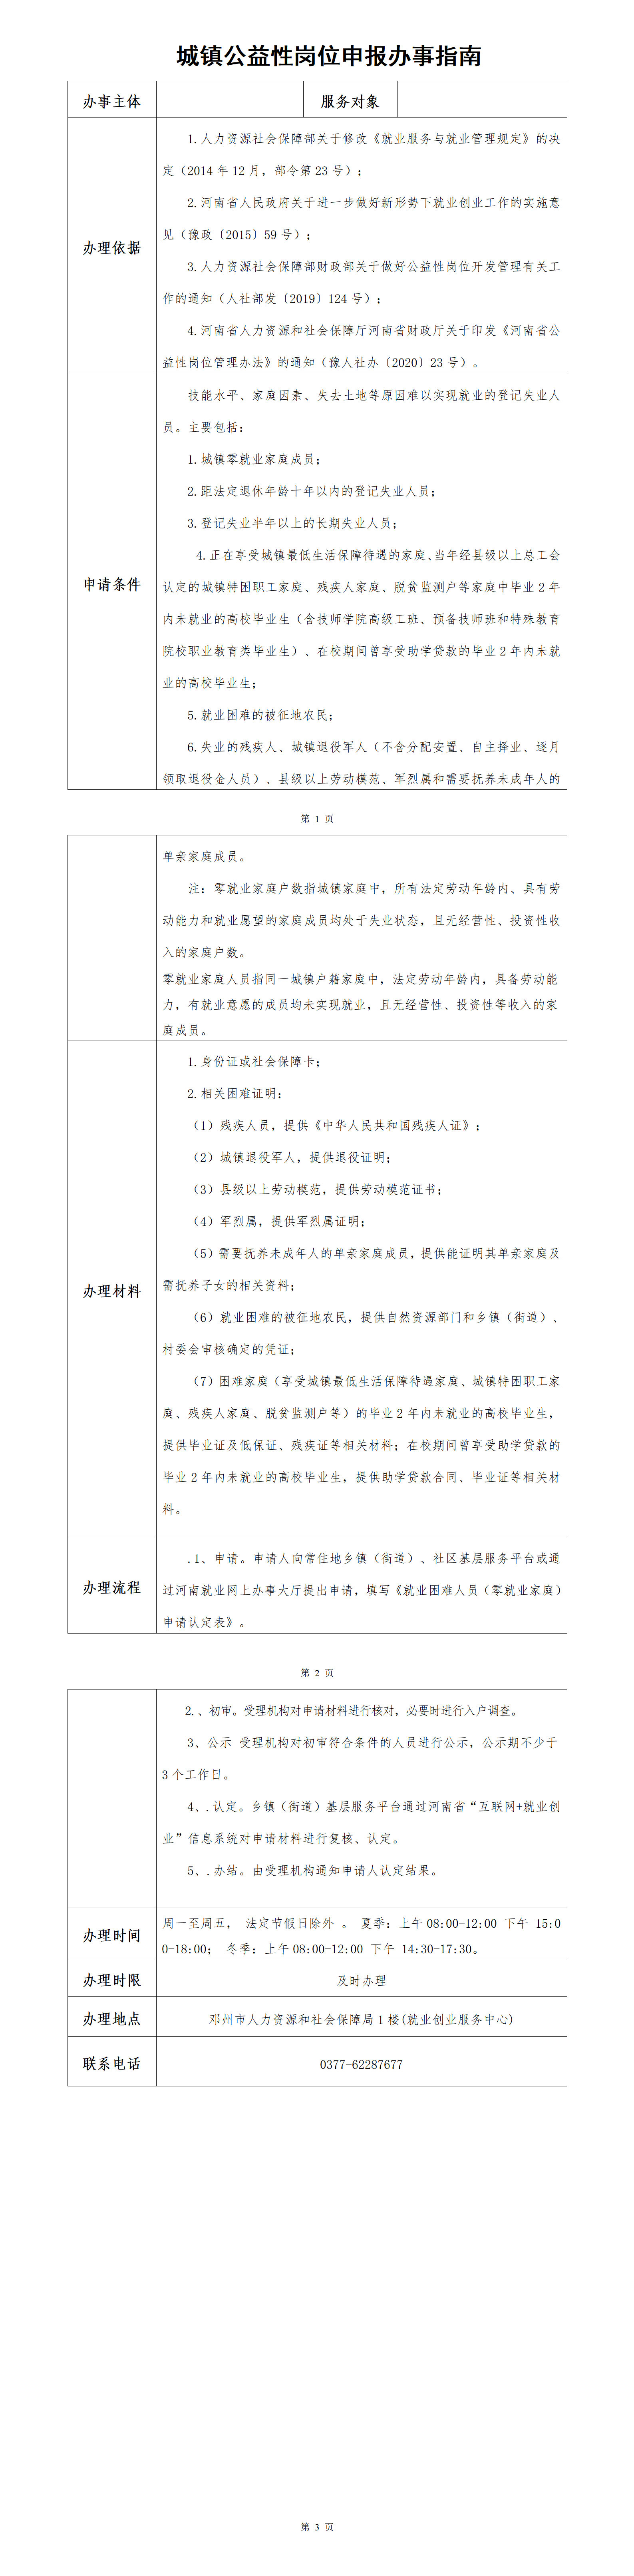 邓州市就业创业服务指南（公益岗）(1)_01.png